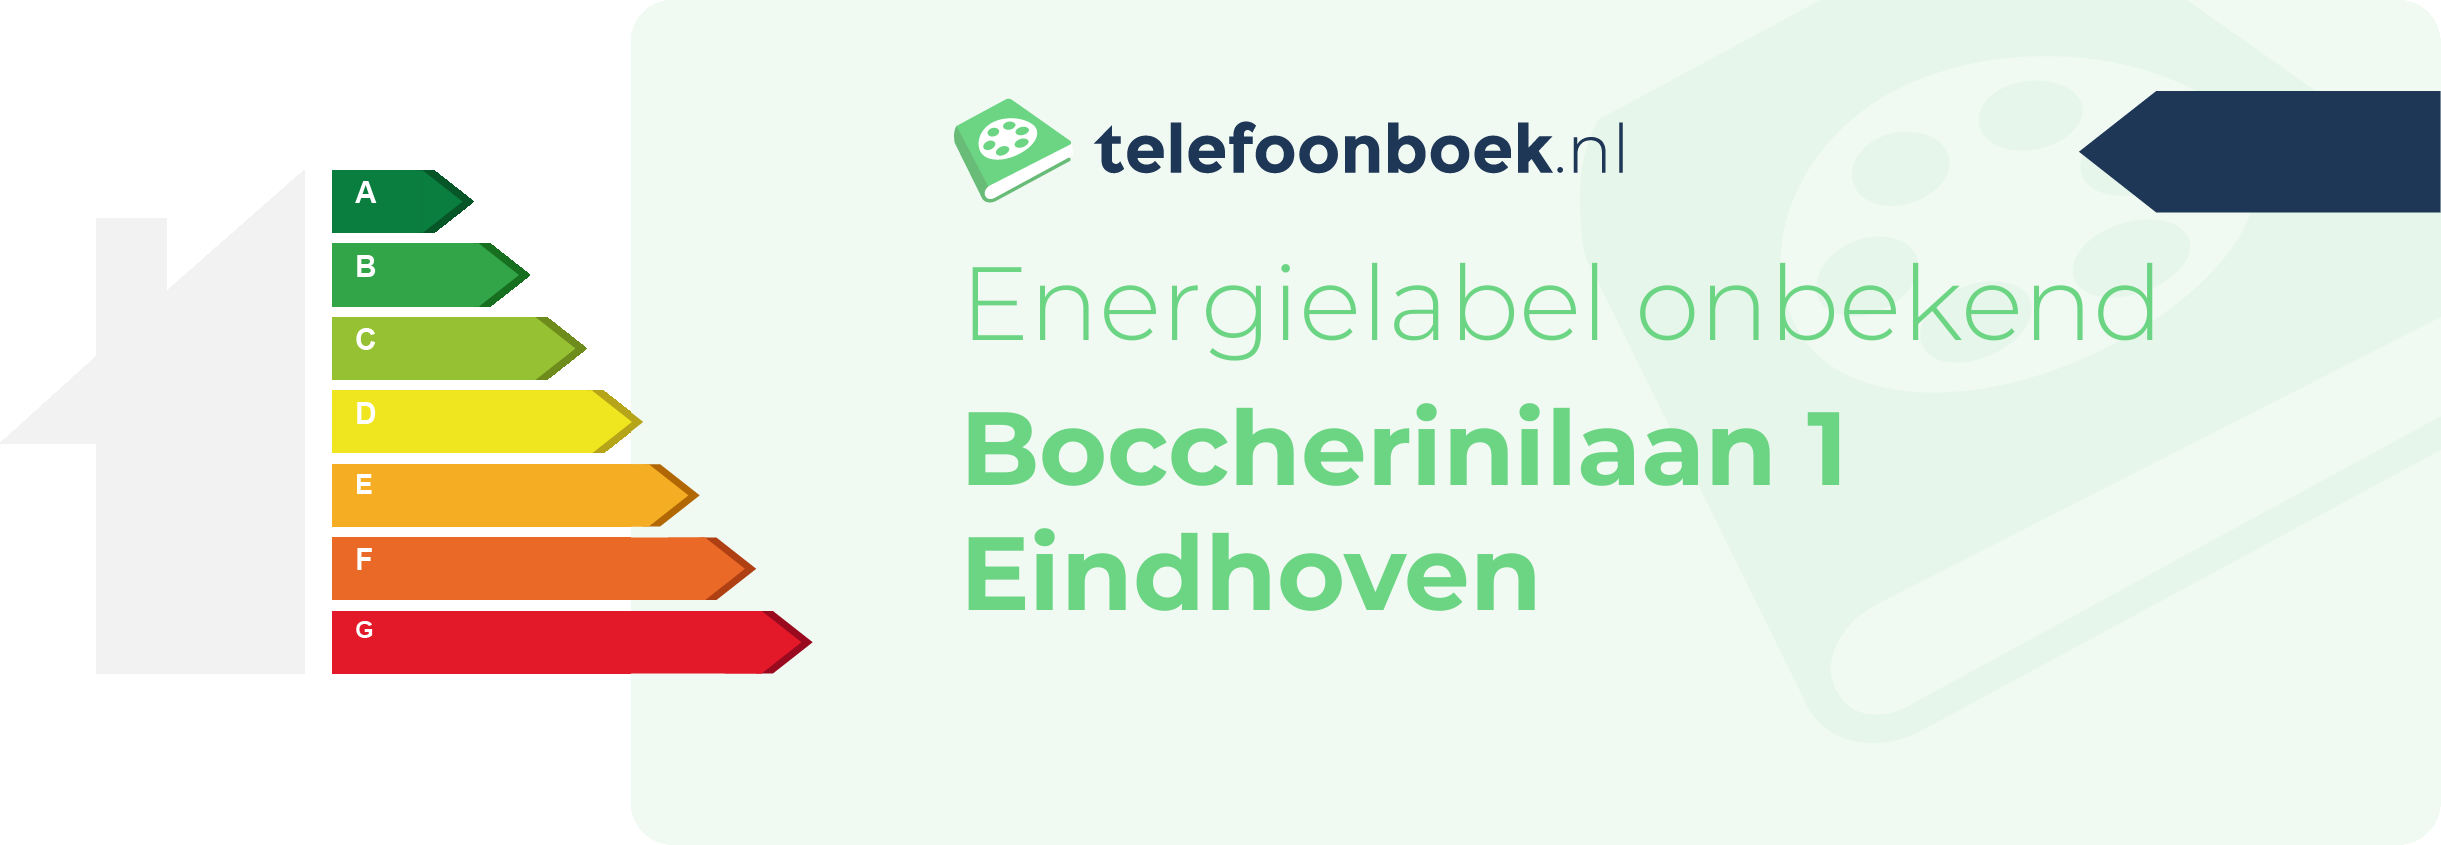 Energielabel Boccherinilaan 1 Eindhoven